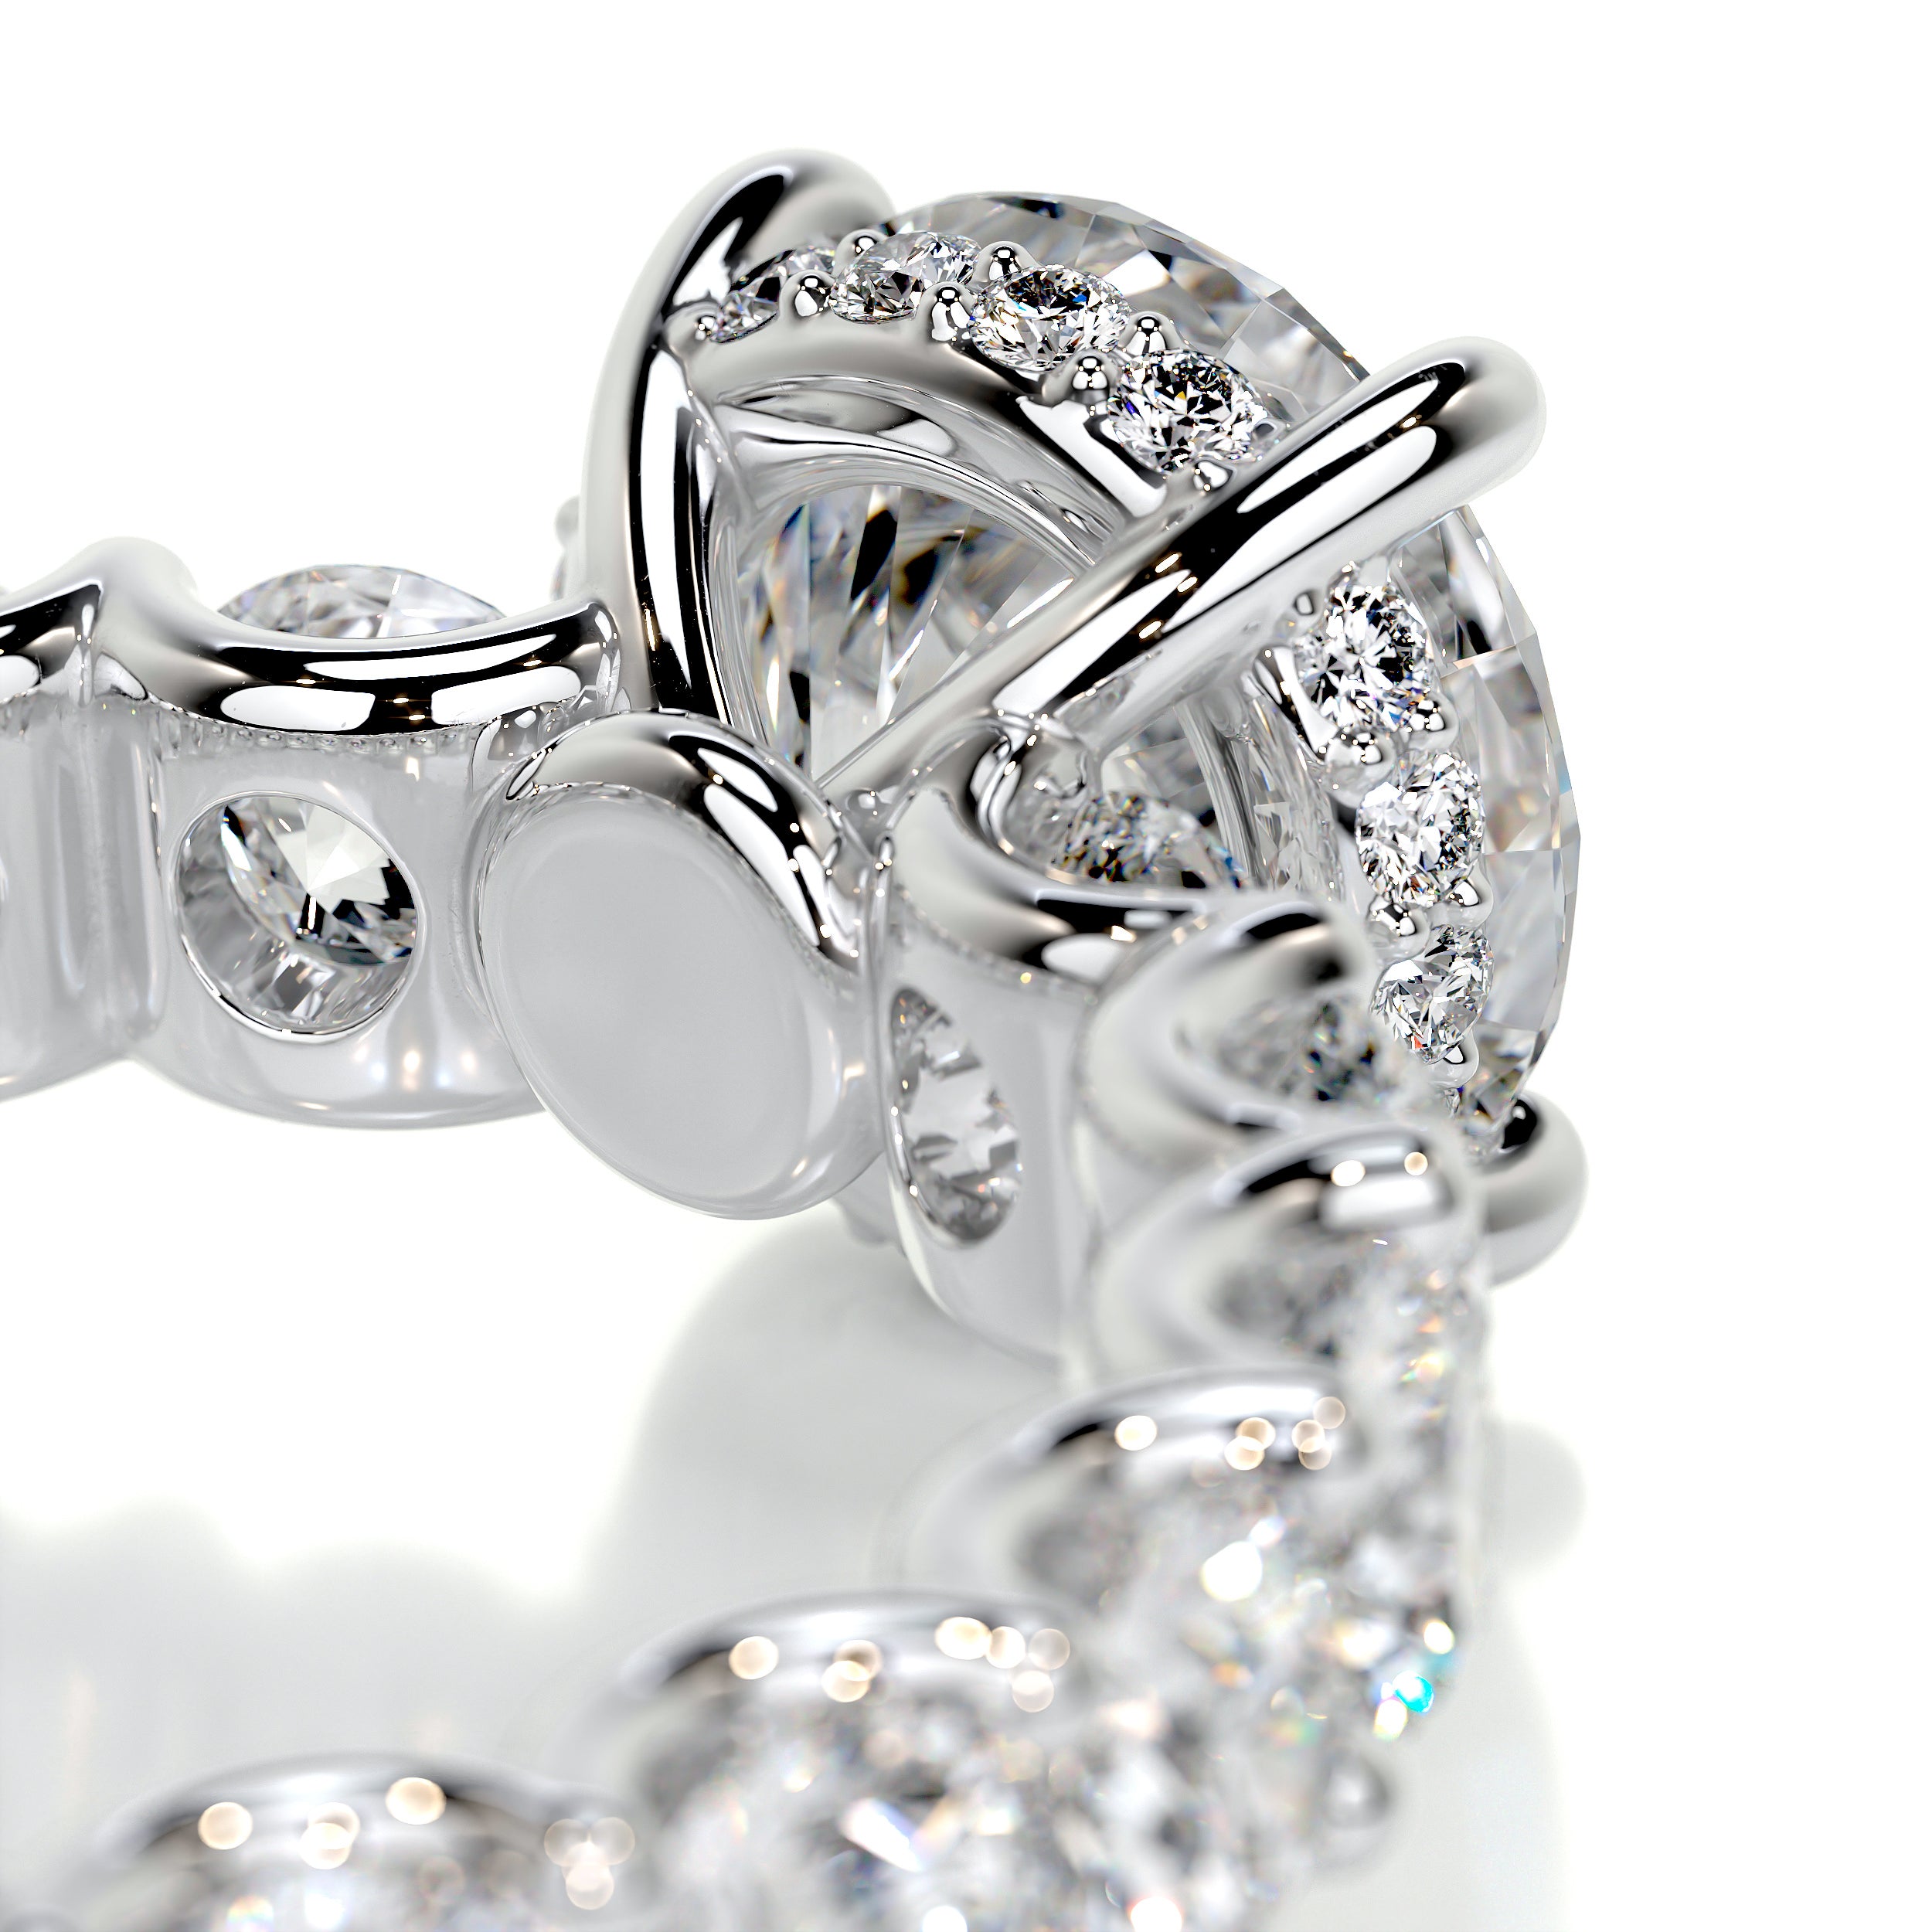 Lola Diamond Engagement Ring   (3.25 Carat) -14K White Gold